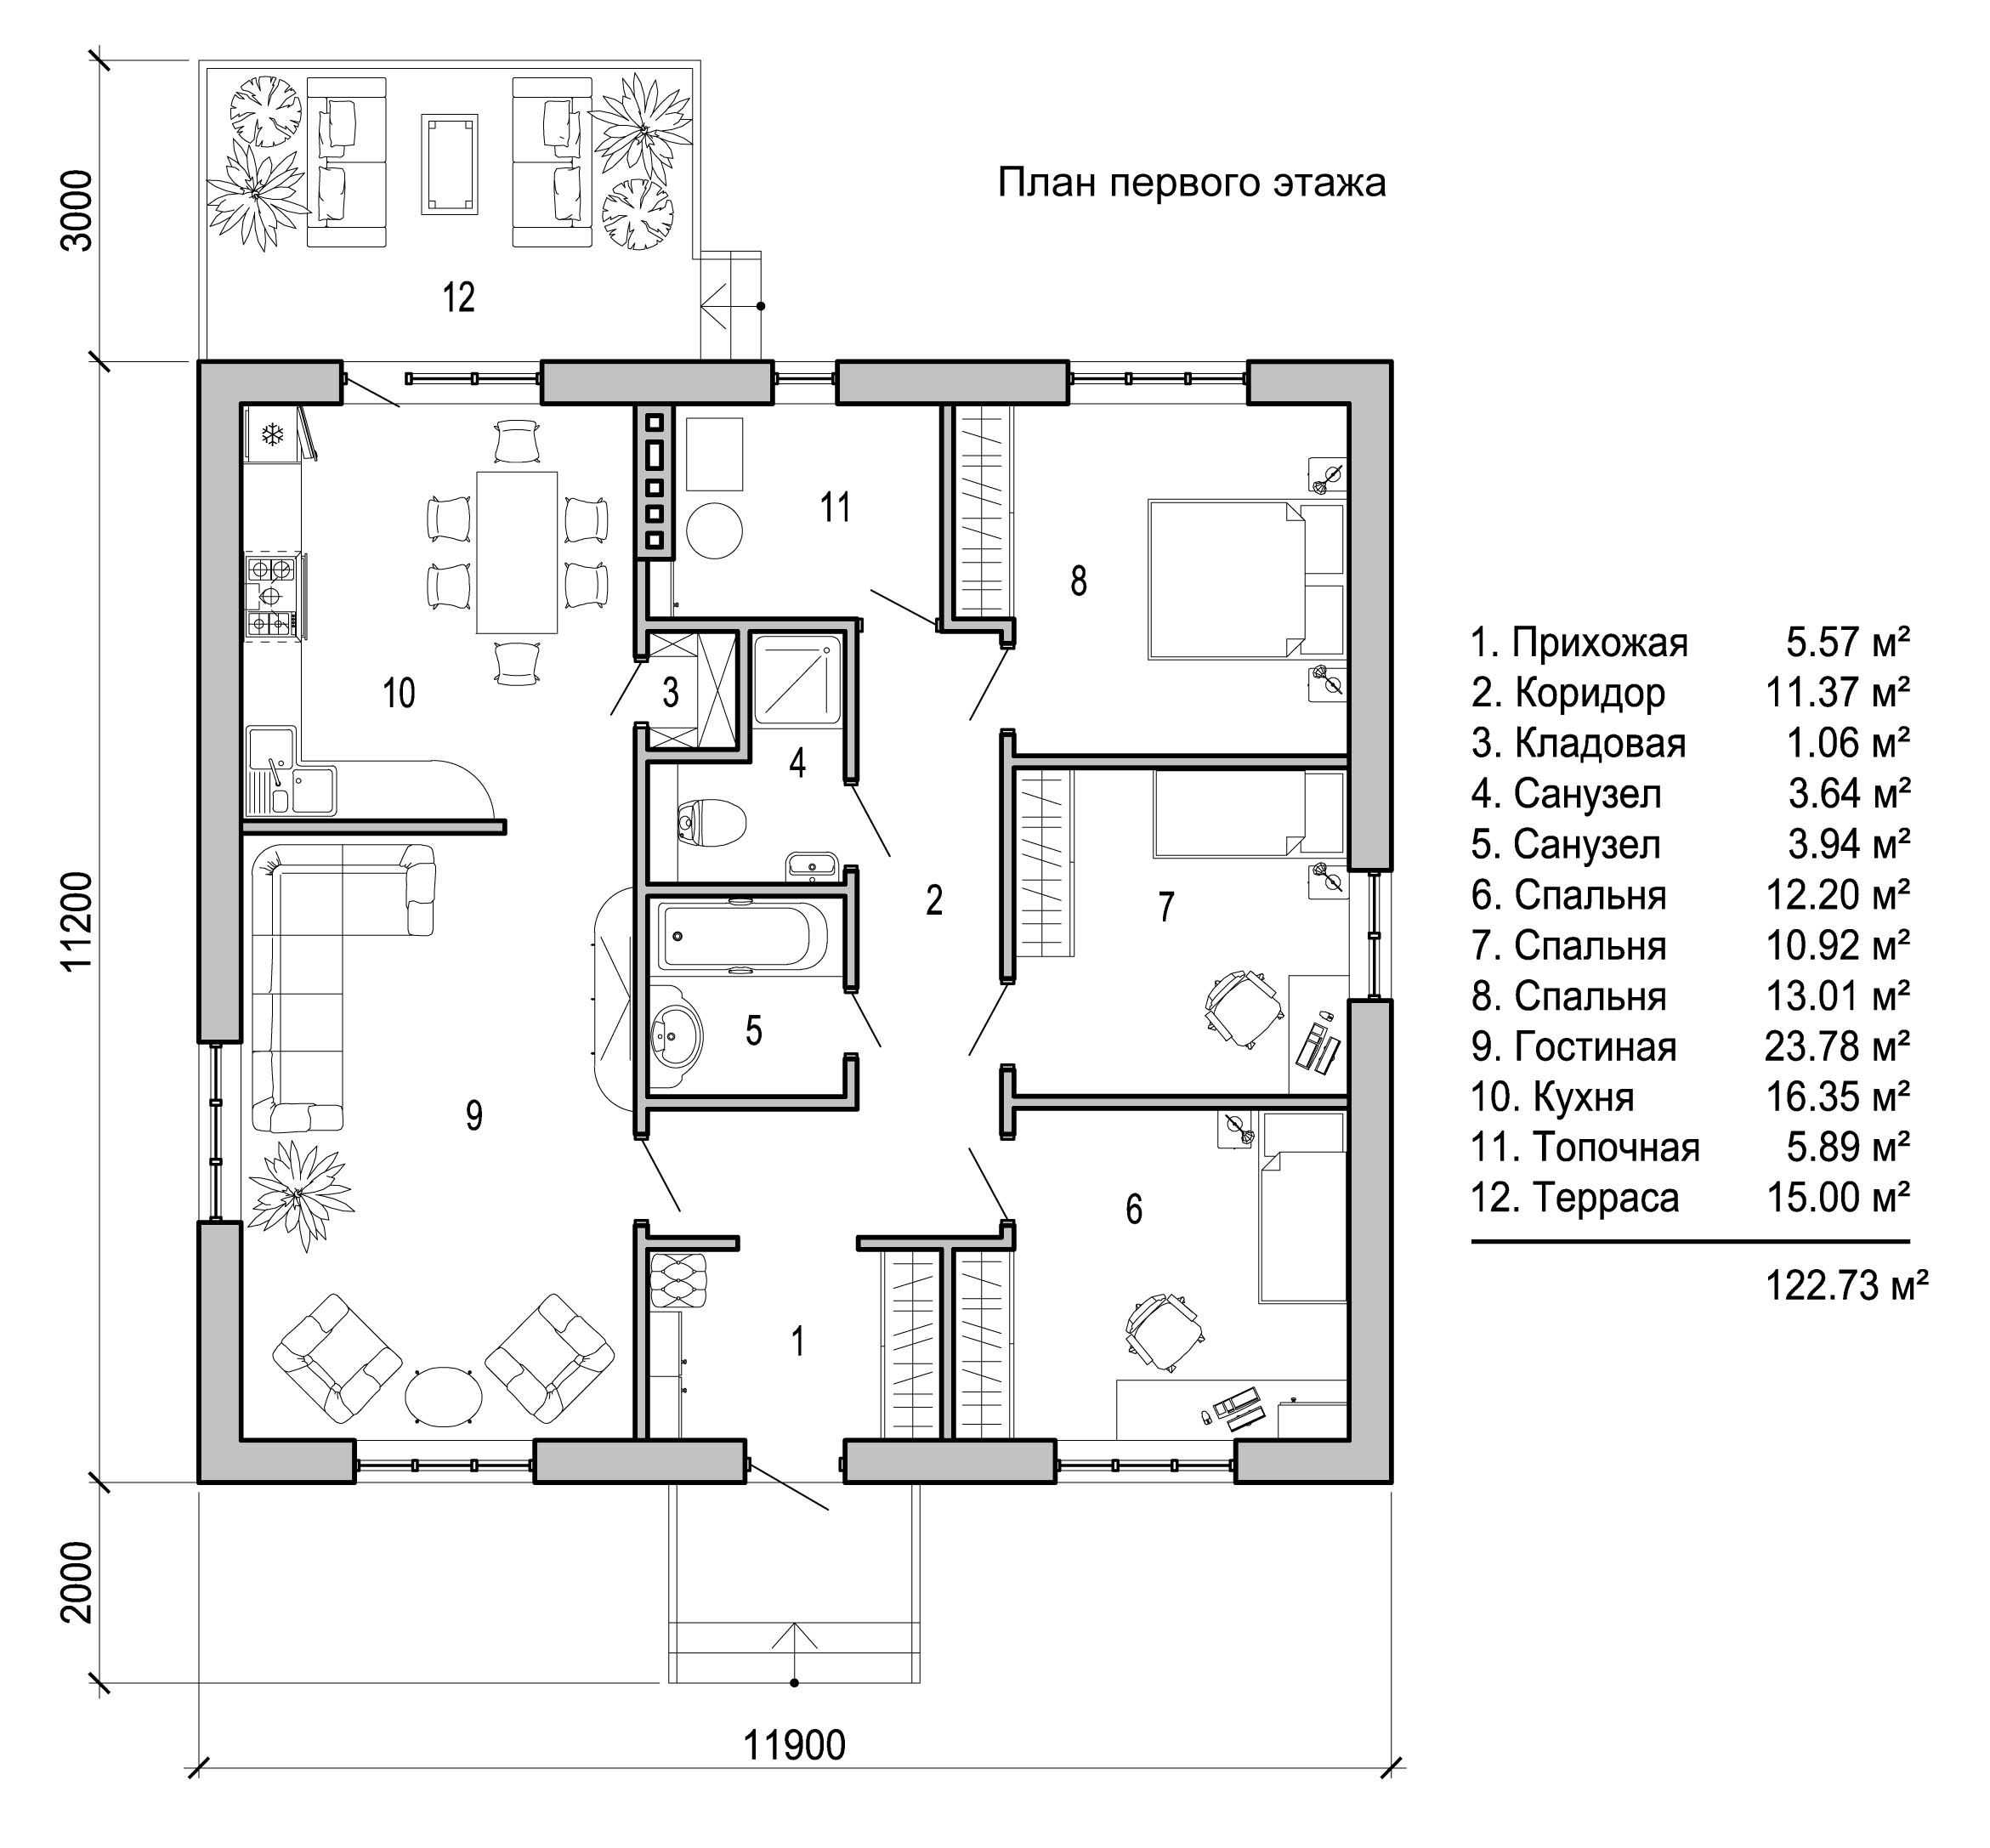 Фото планировки одноэтажного дома 10 на 10: грамотный проект